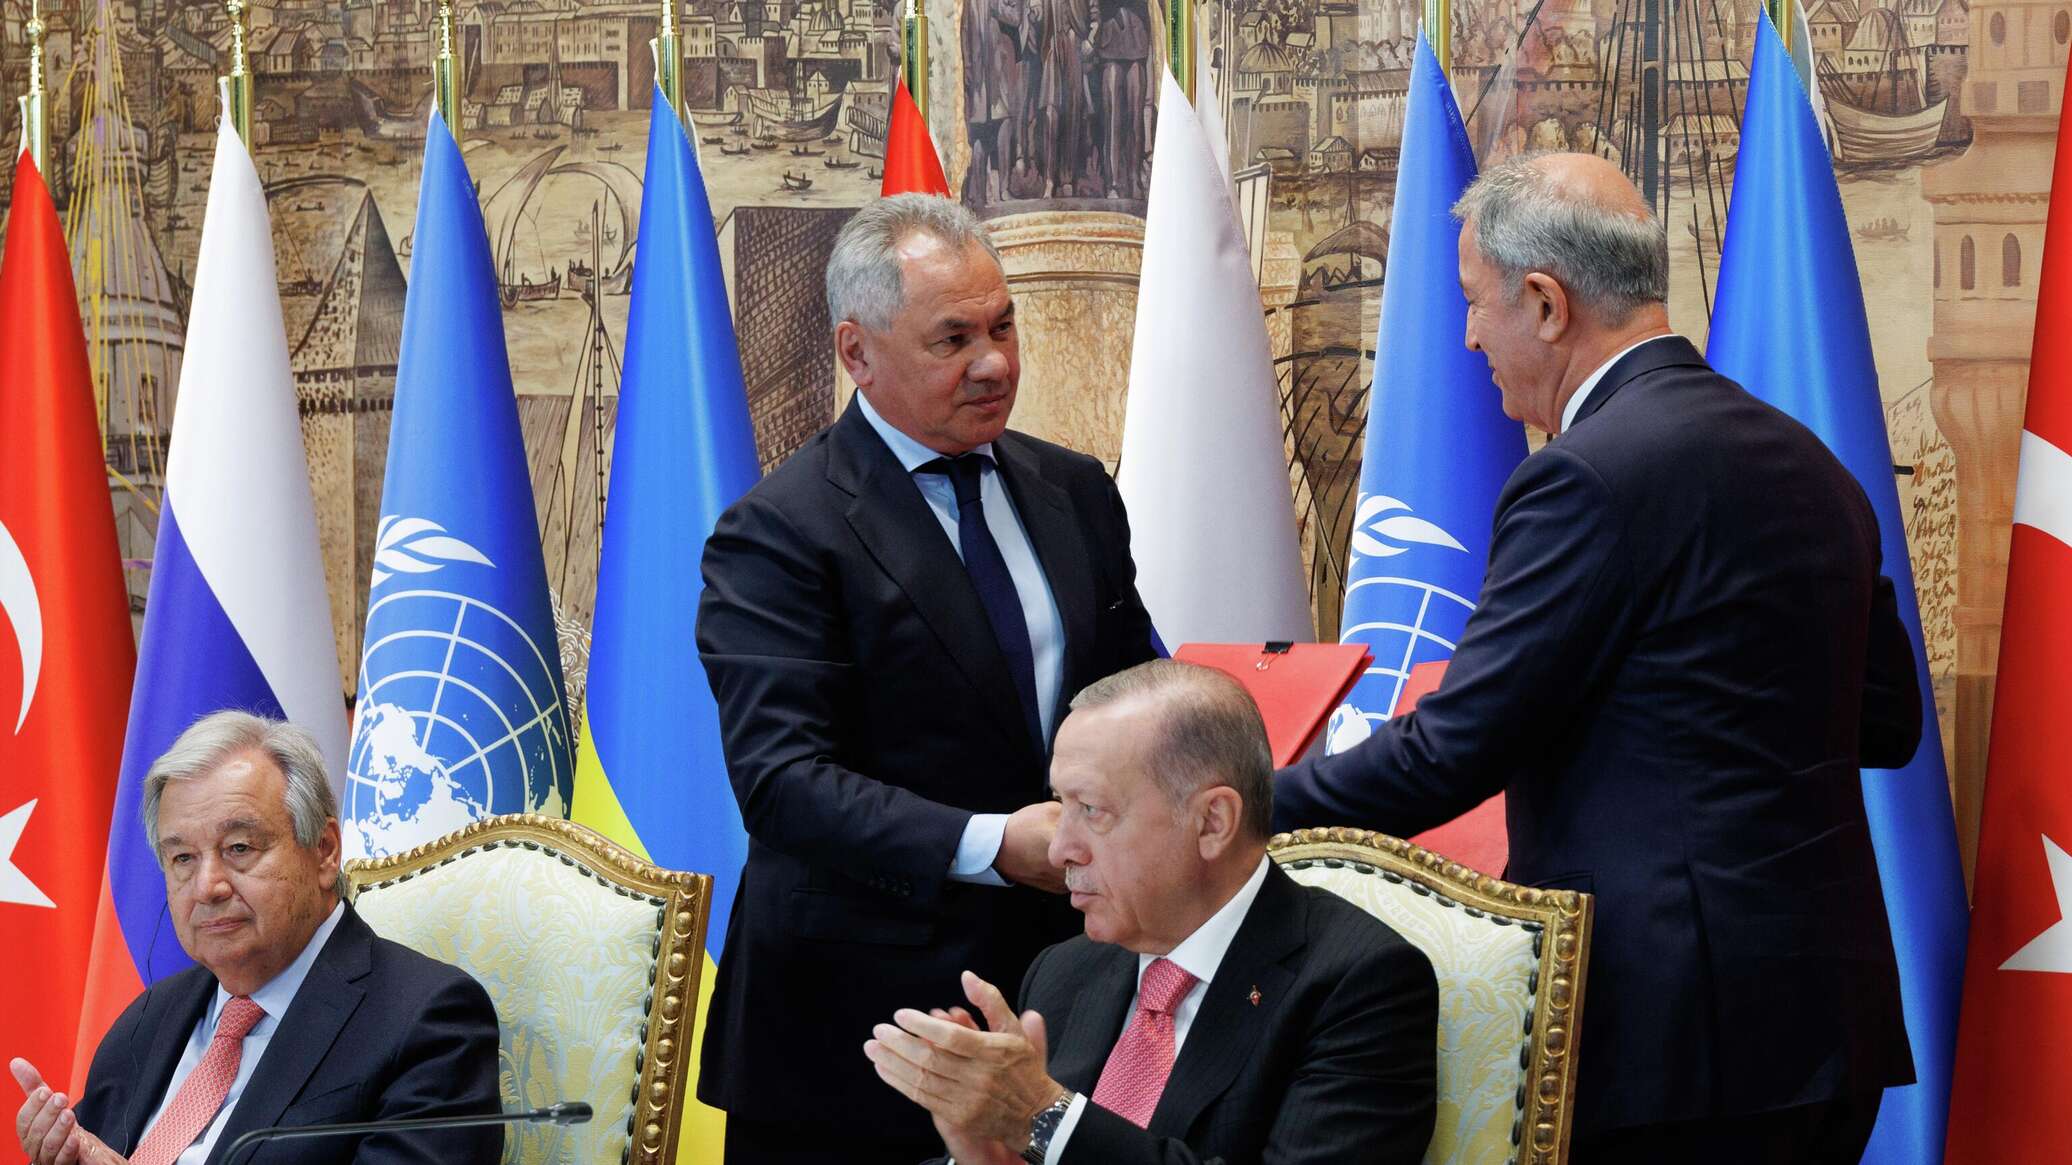 Стамбульский договор с украиной